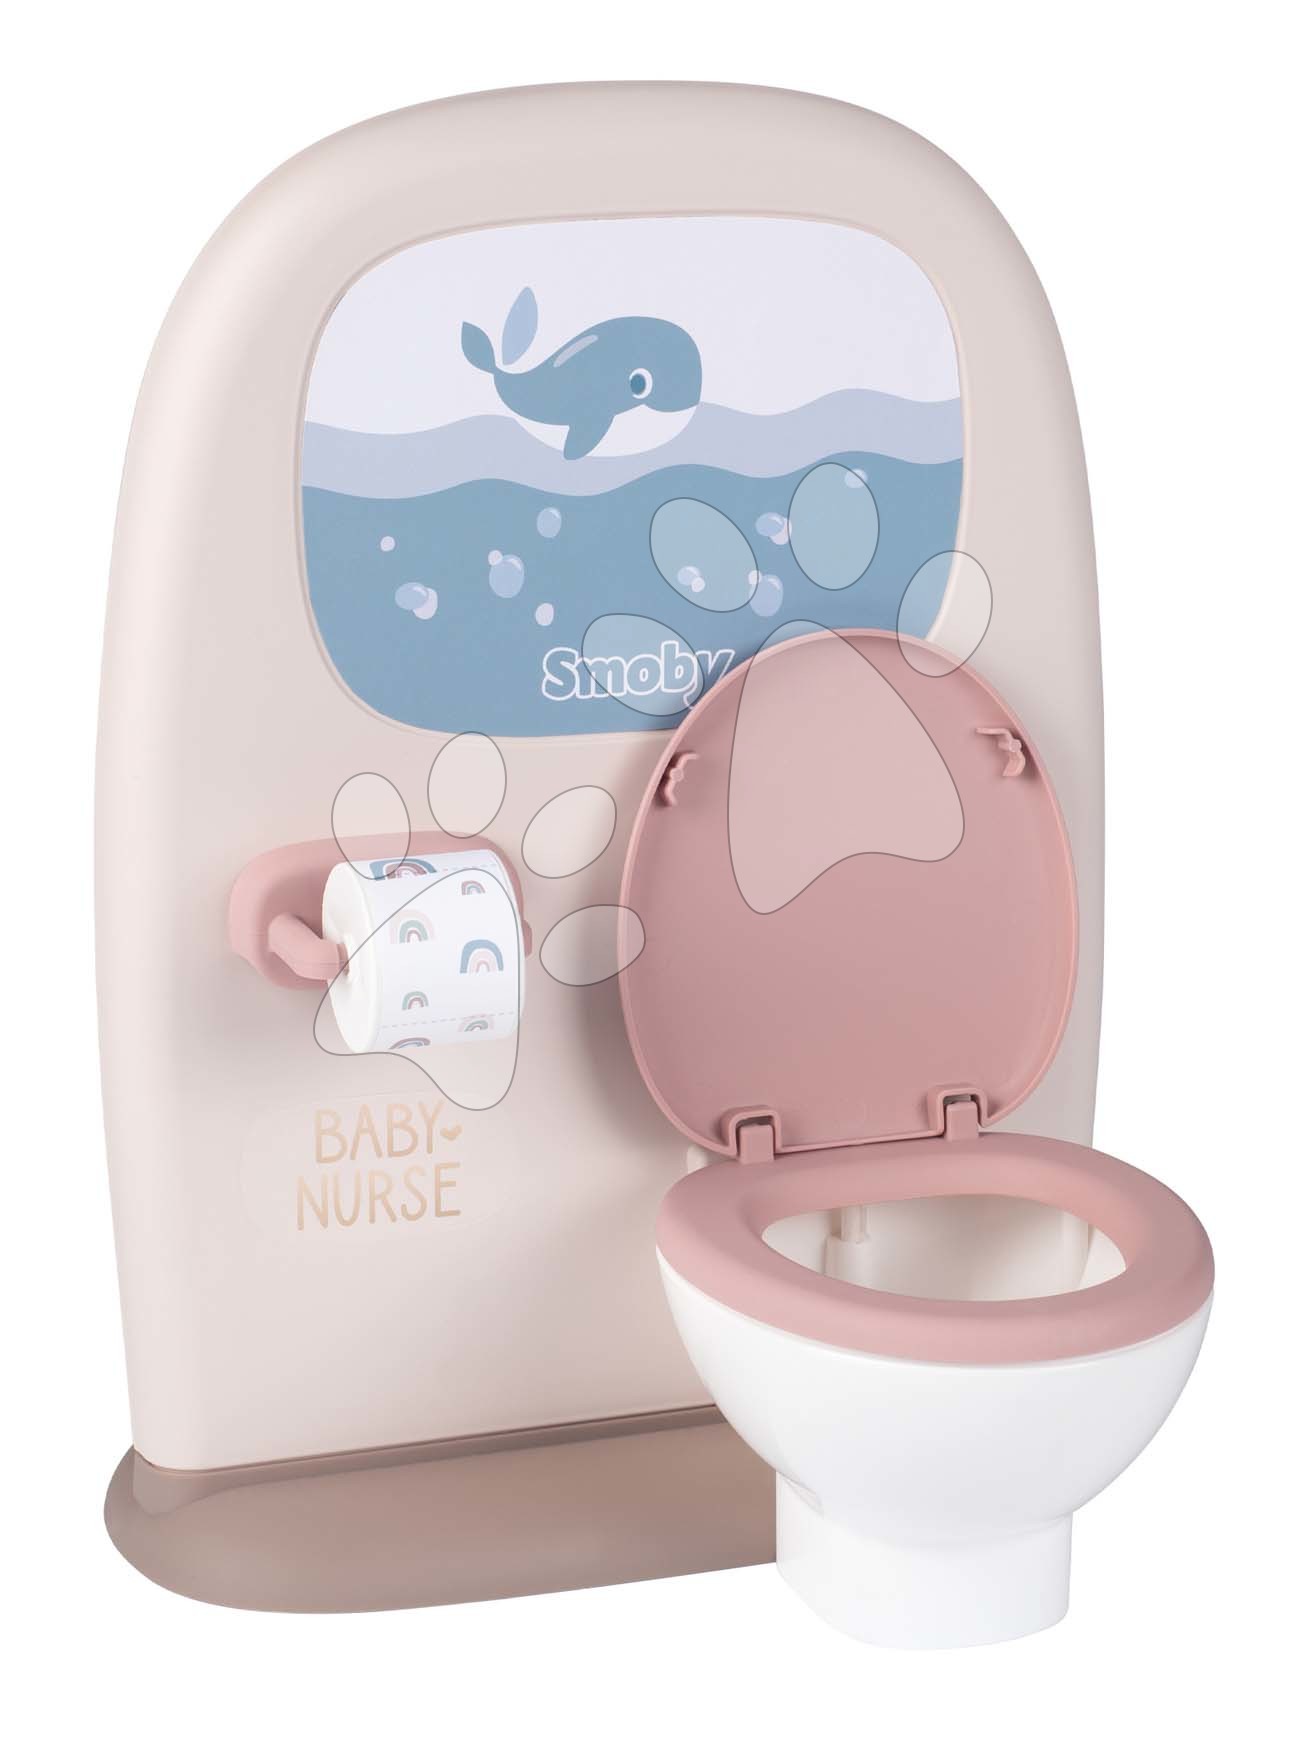 E-shop Záchod a kúpeľňa pre bábiky Toilets 2in1 Baby Nurse Smoby obojstranný s WC papierom a 3 doplnky k umývadlu